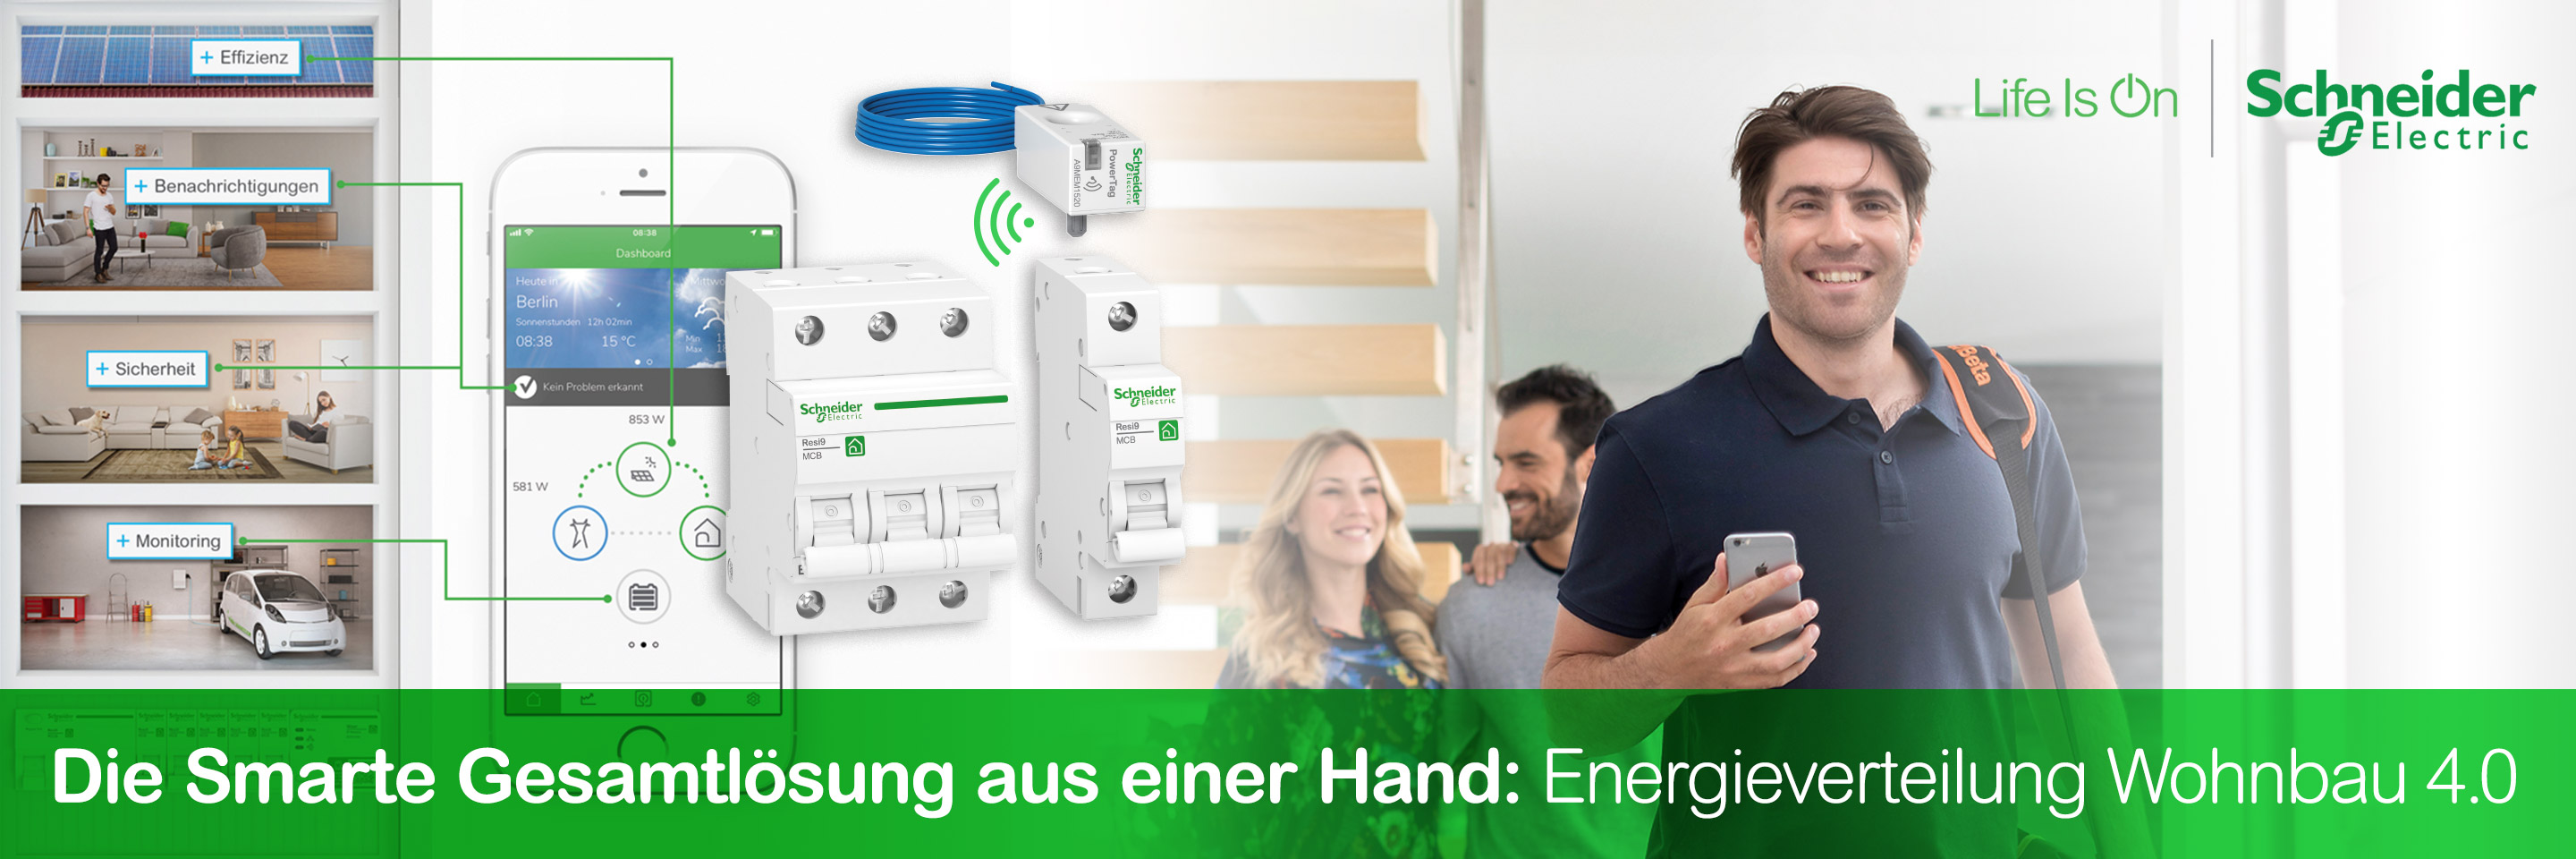 Schneider Electric Die smarte Gesamtlösung für die Energieverteilung im Wohnbau 4.0